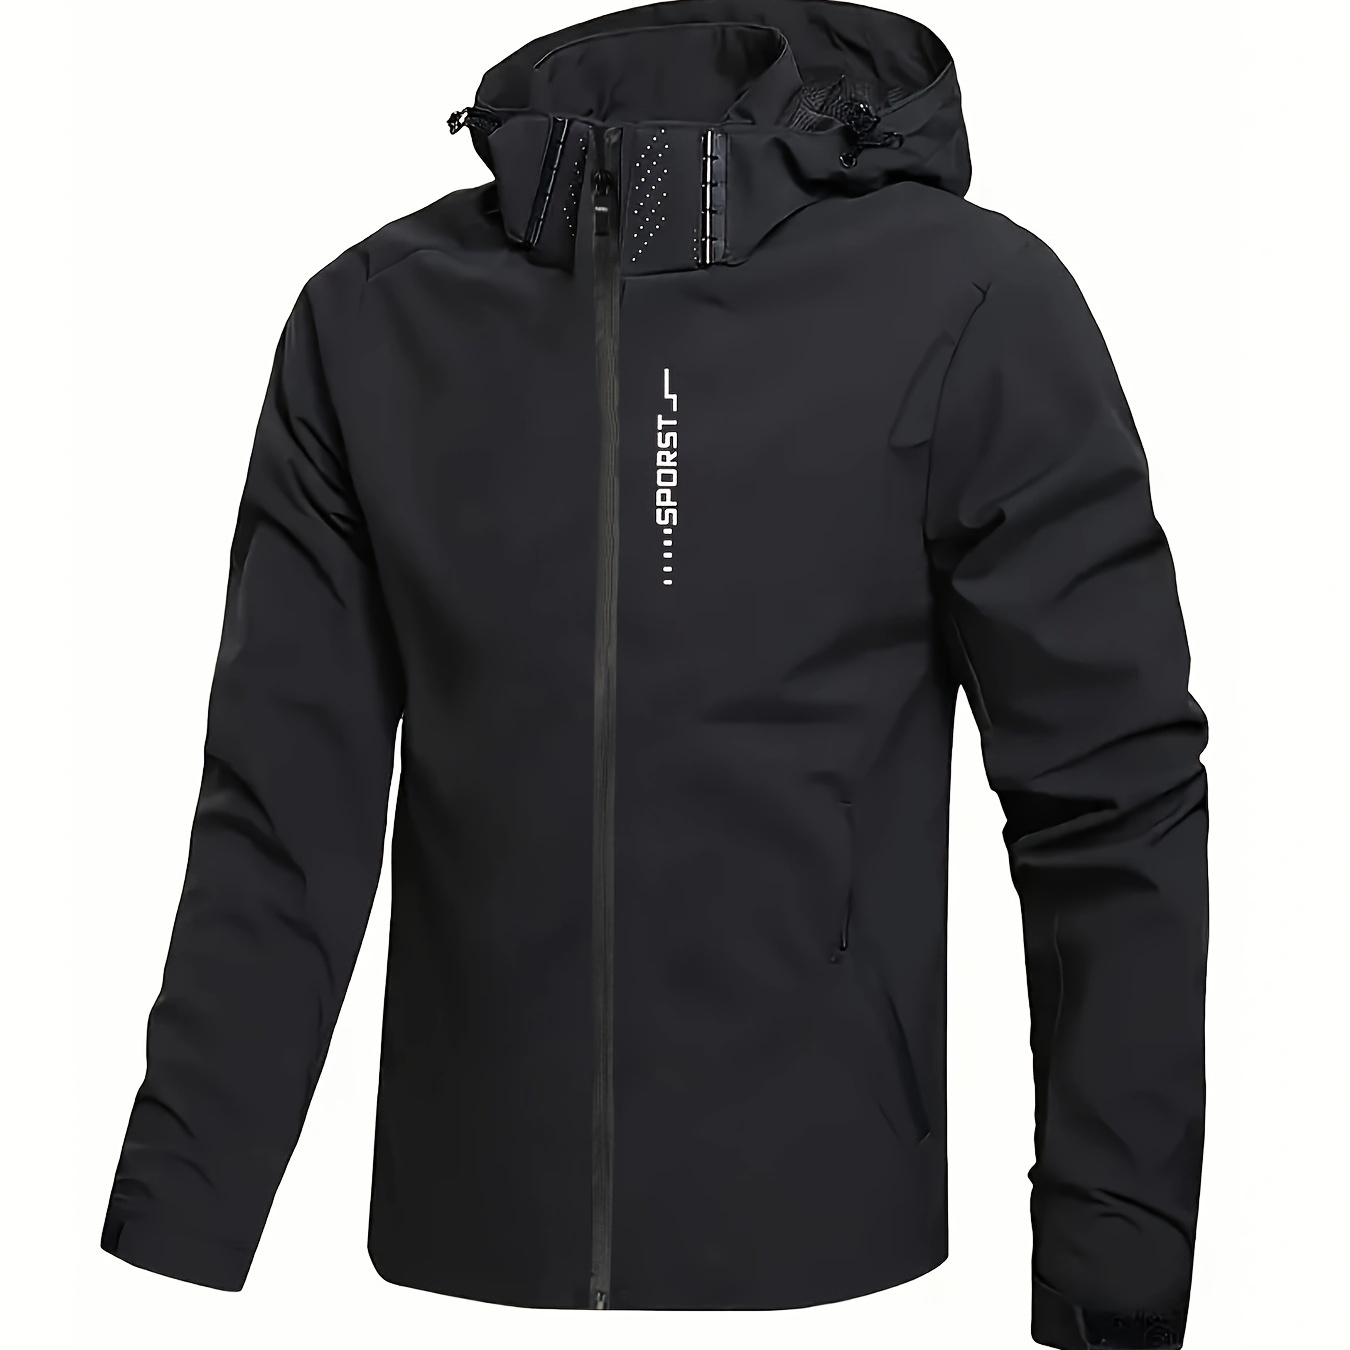 

Men's Hooded Windbreaker Jacket, Casual Waterproof Lightweight Jacket For Outdoor Activities